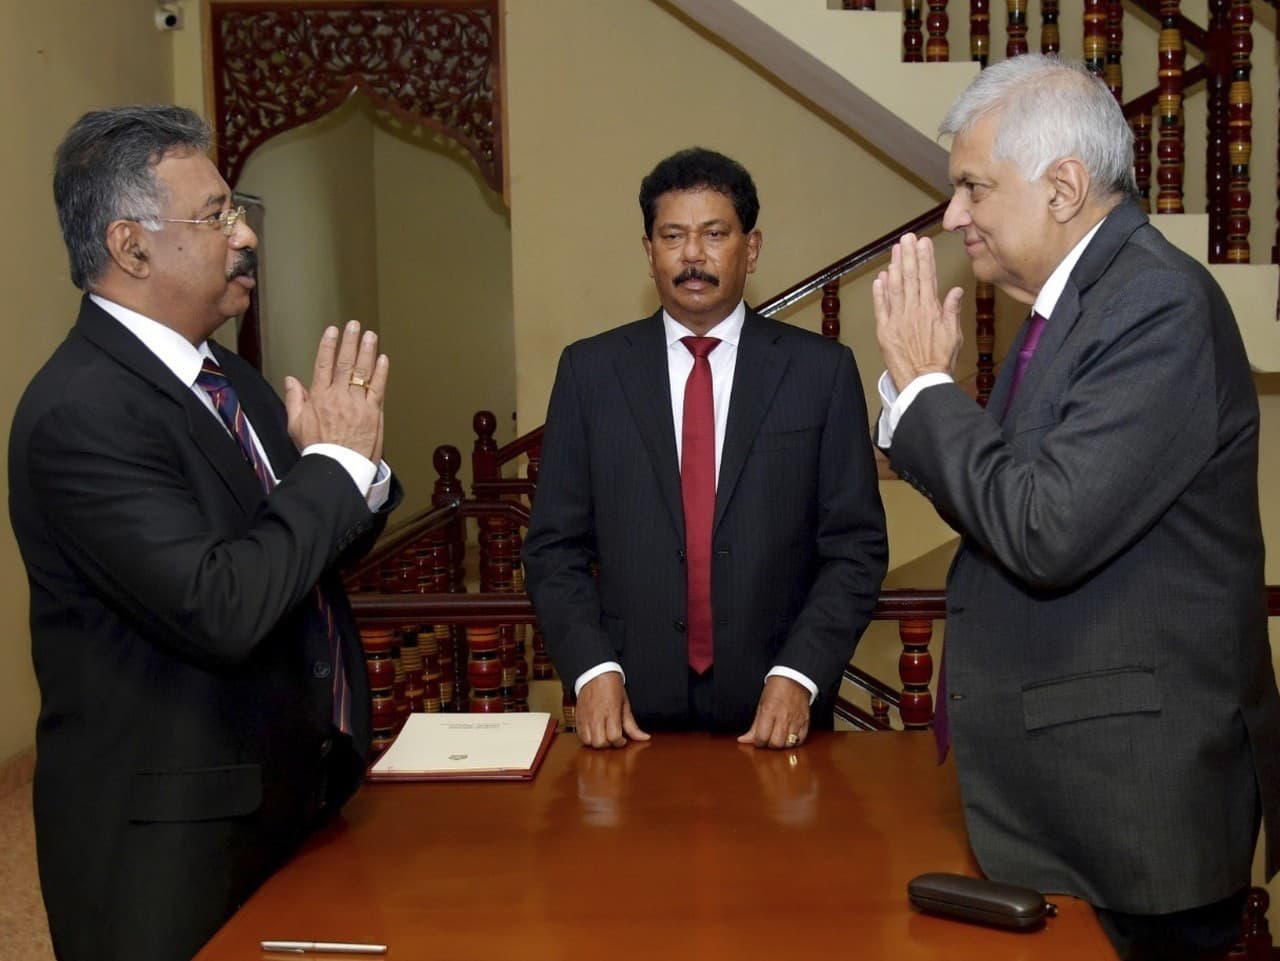 Srílanský premiér Ranil Vikramasinghe zložil v piatok prísahu ako dočasný prezident.